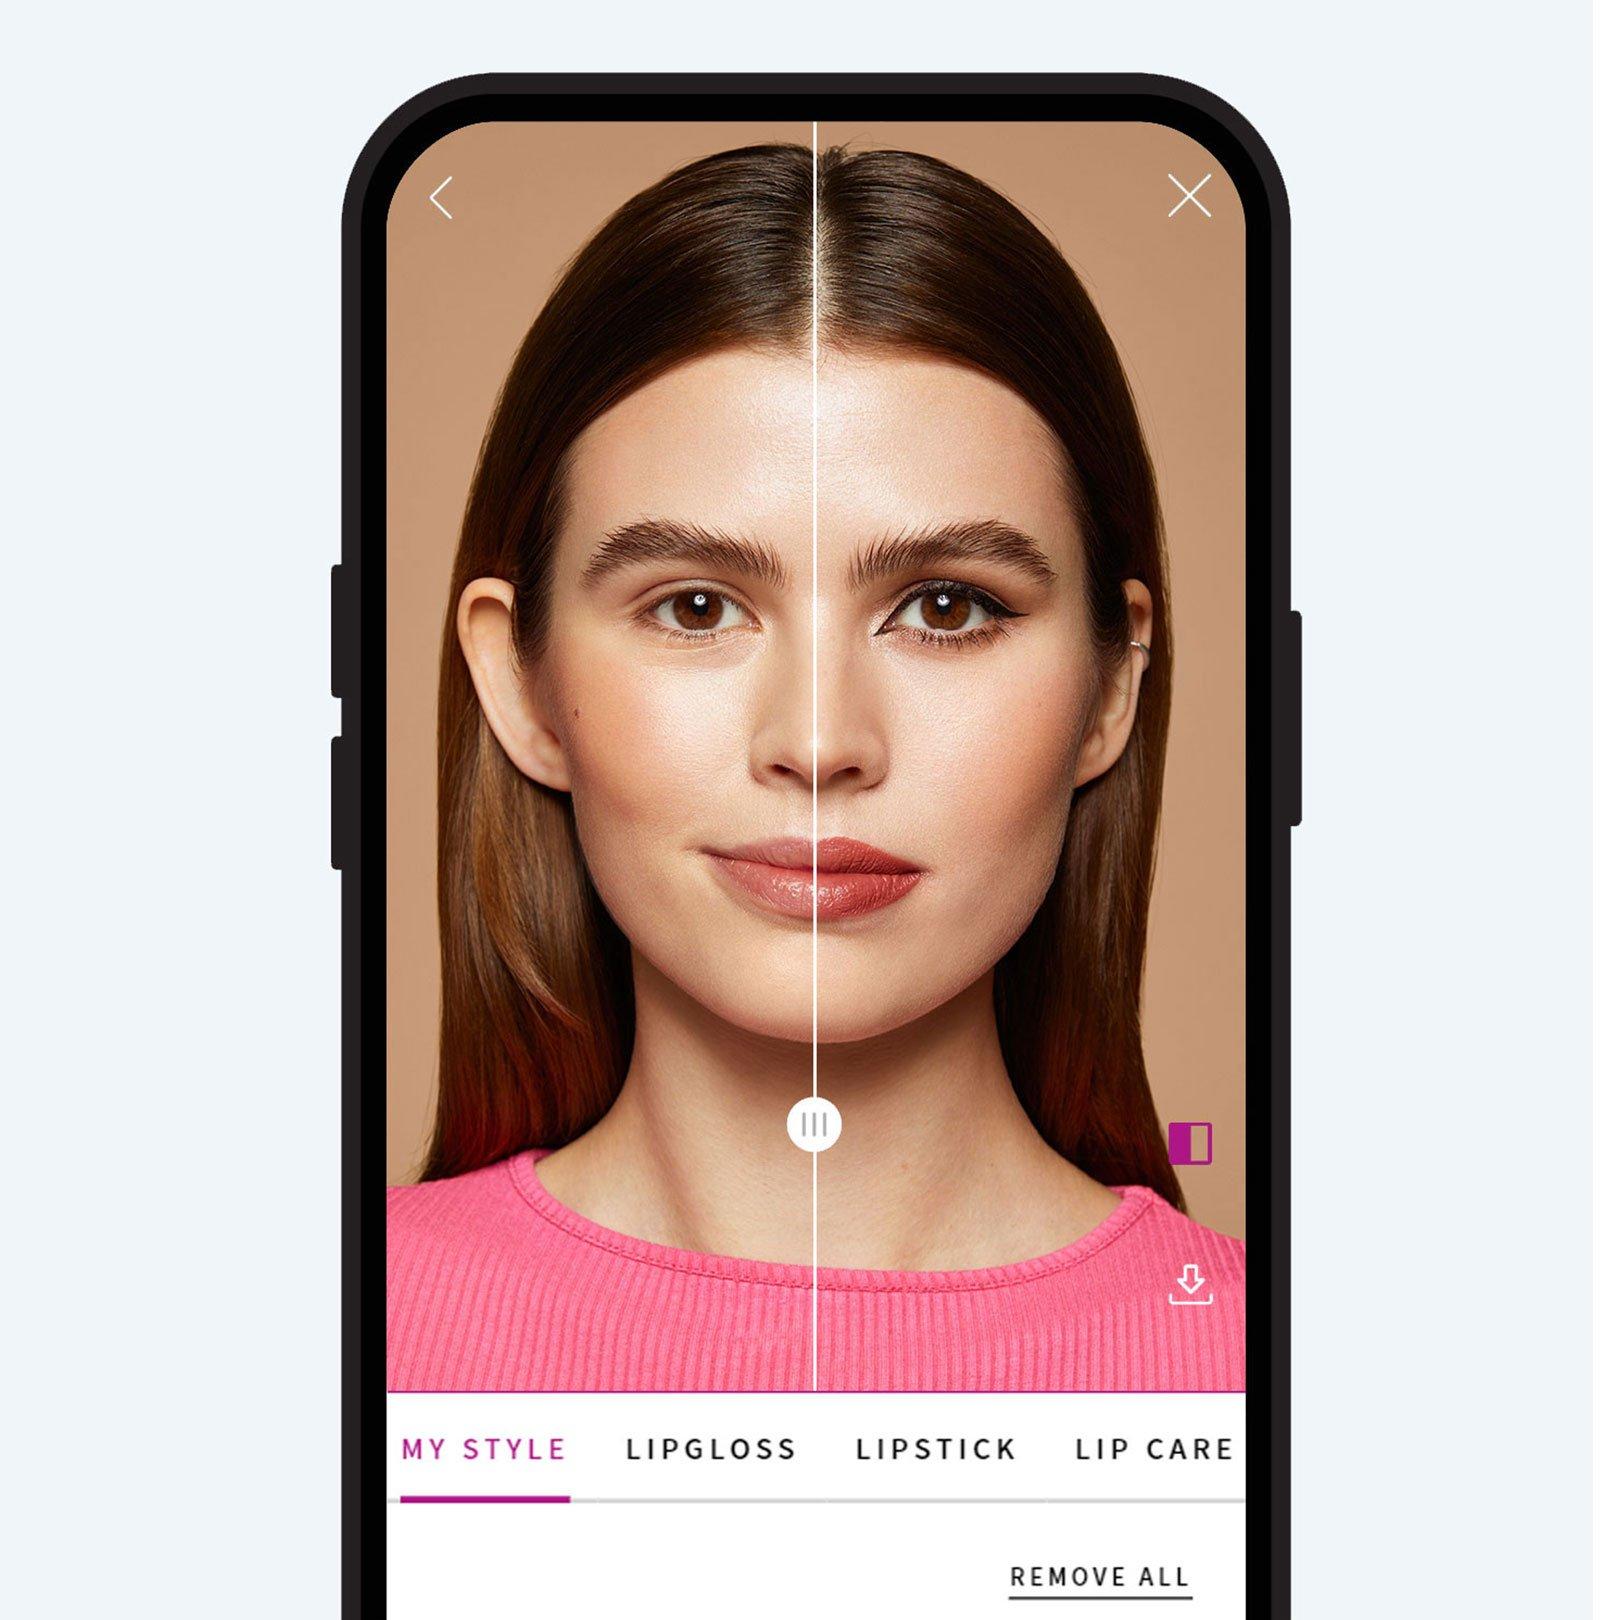 Test de maquillaje virtual essence antes y después de la comparación